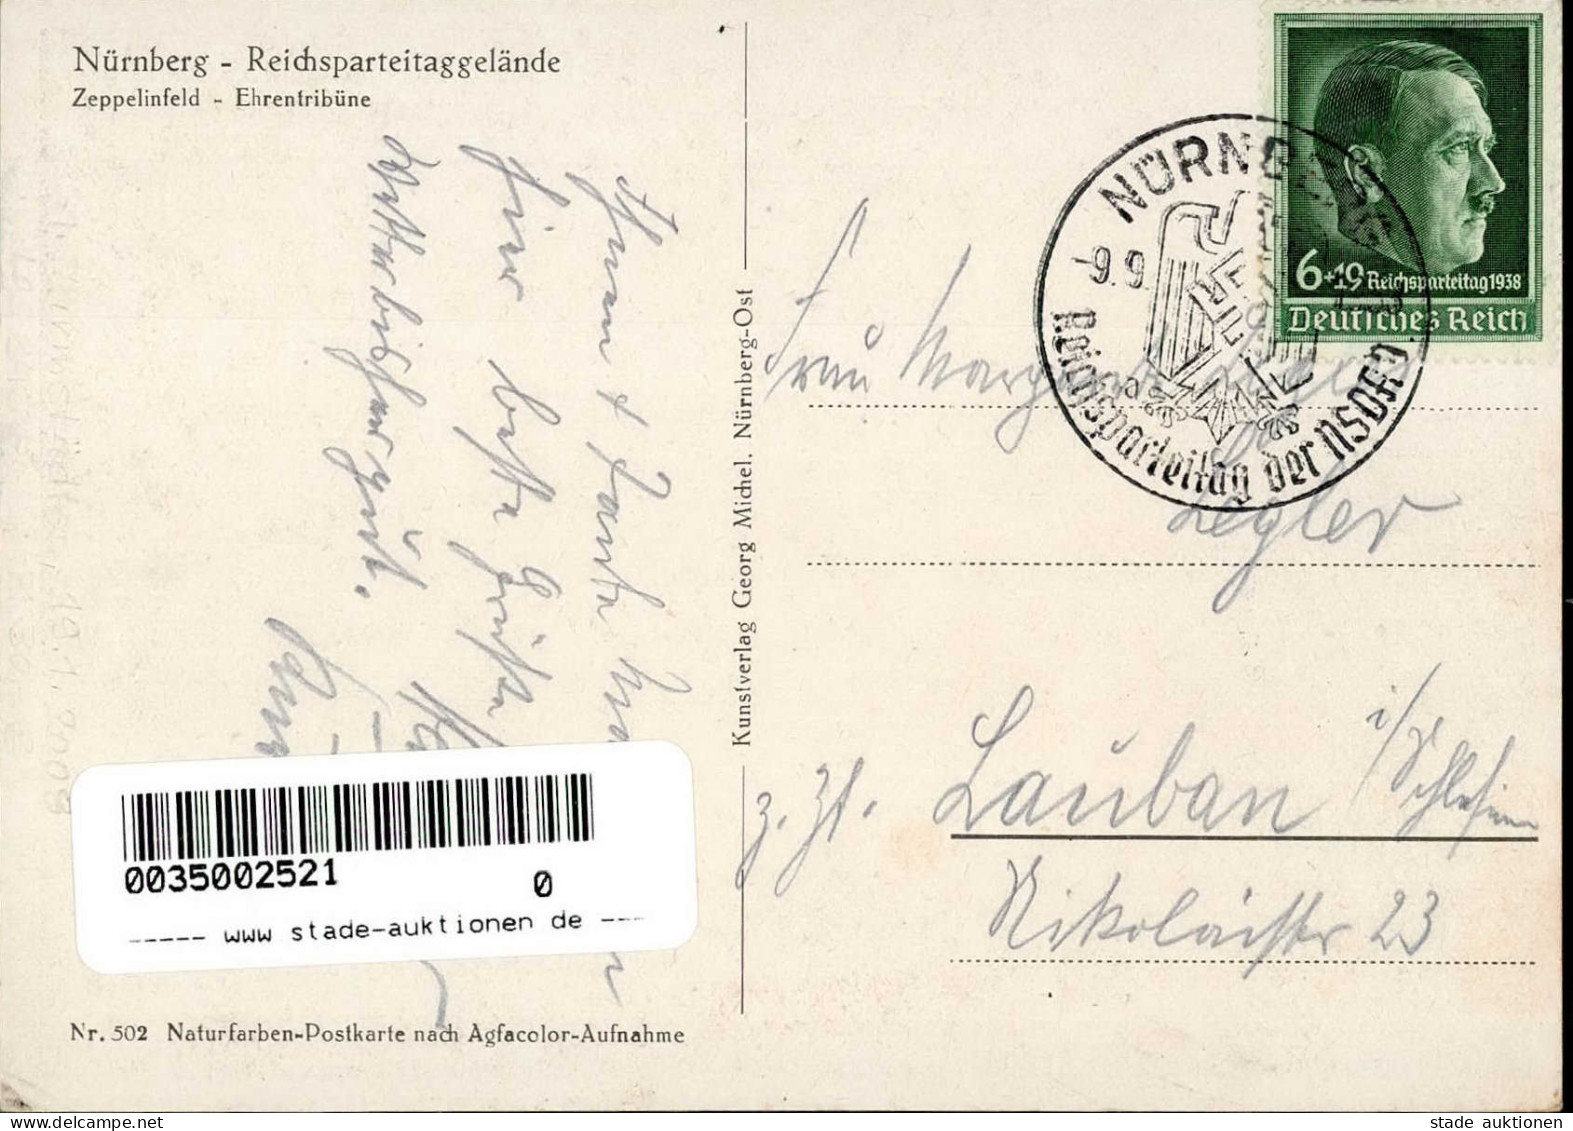 REICHSPARTEITAG NÜRNBERG WK II - Michel 502 Reichsparteitagsgelände Zeppelinfeld - Ehrentribühne S-o 1938 I - Guerra 1939-45